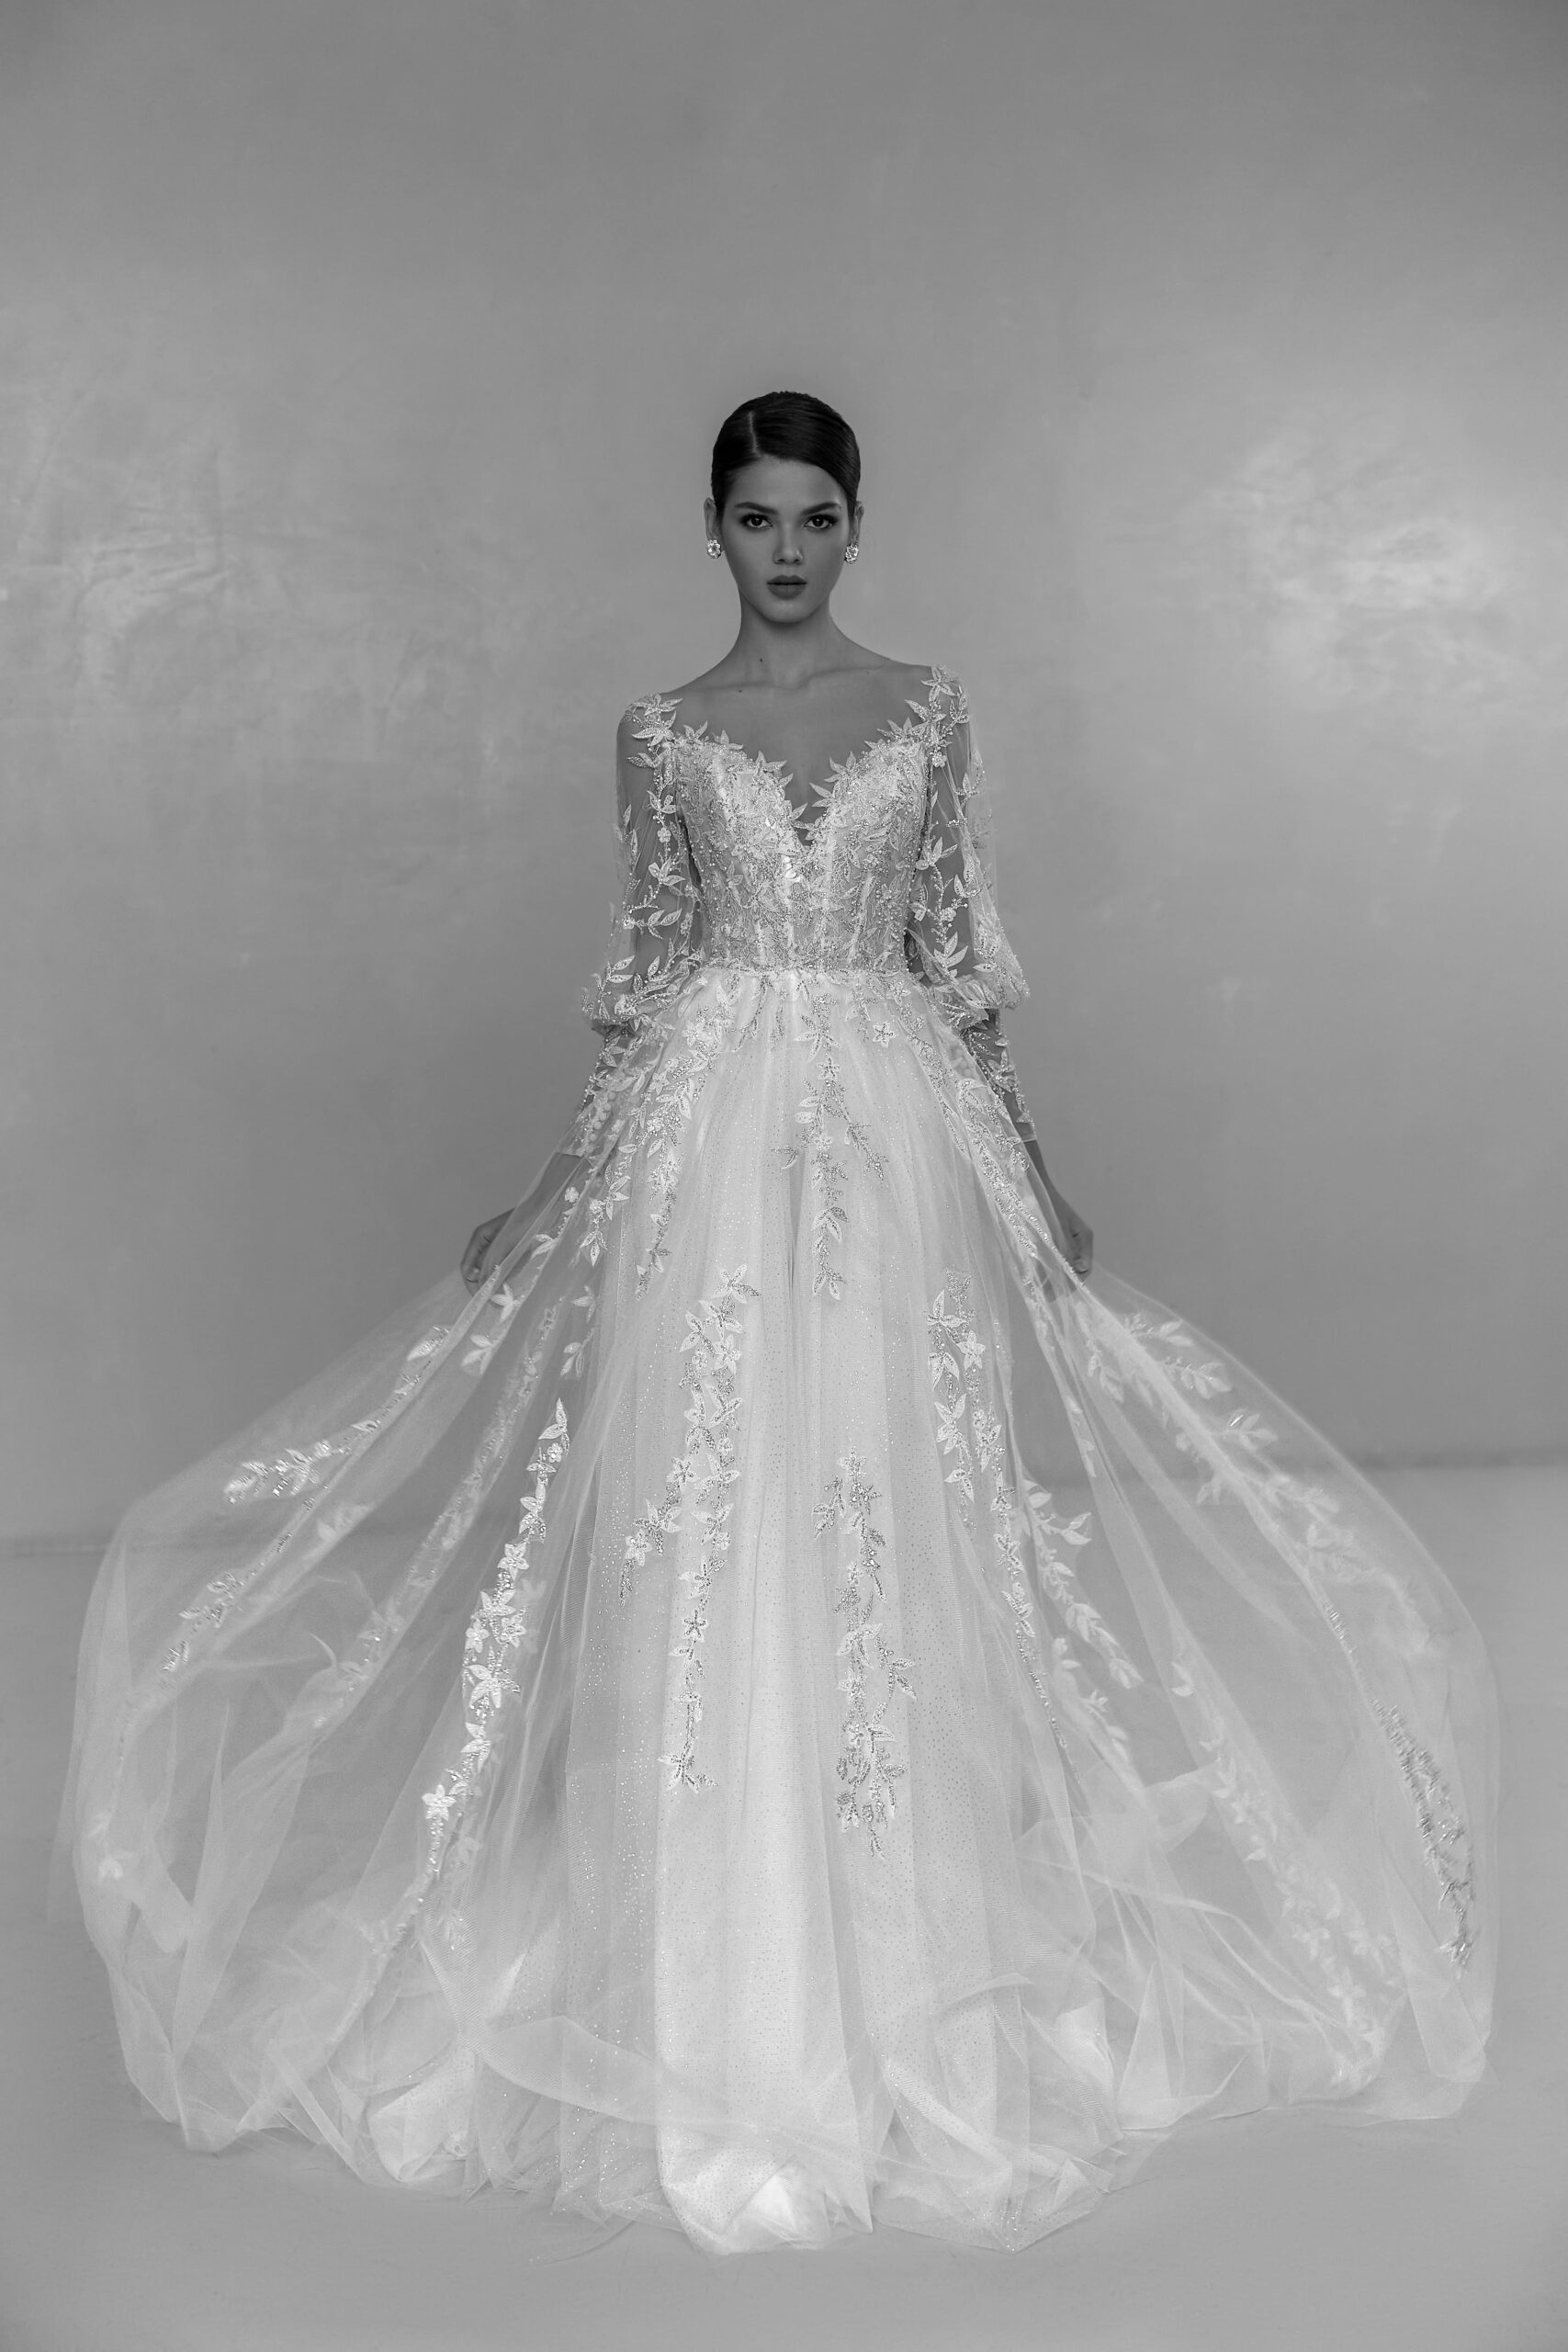 Свадебное платье Сигнора